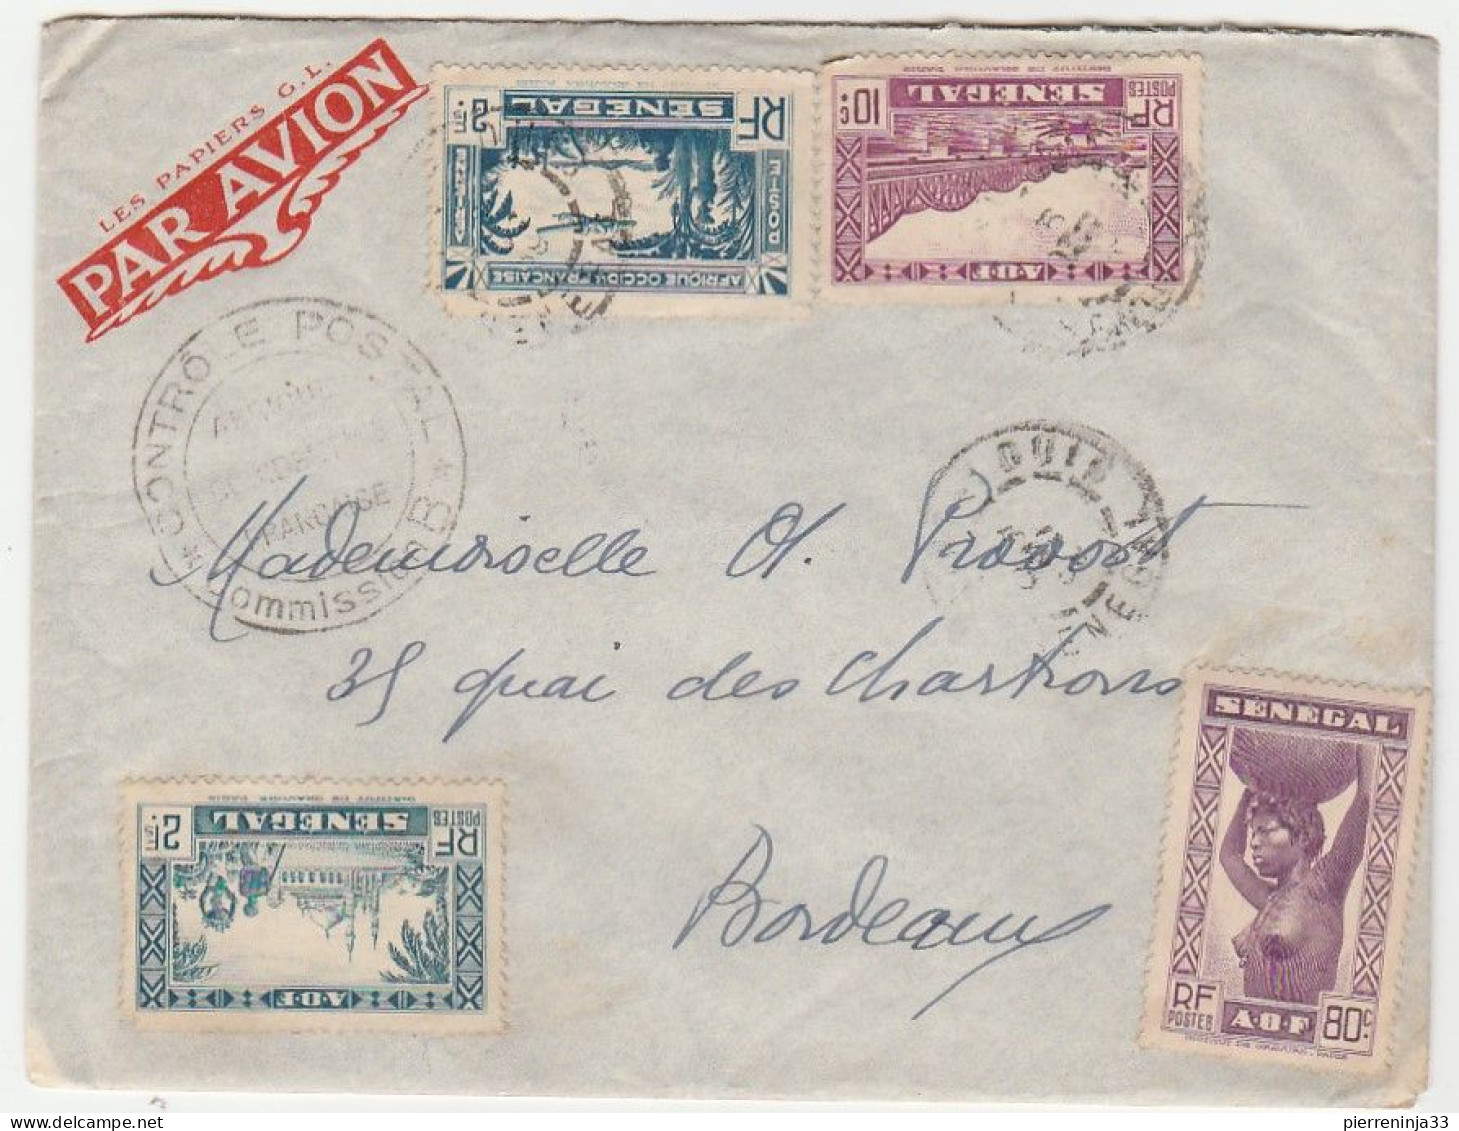 Lettre Saint Louis Du Sénégal Avec Contrôle Postal Pour Bordeaux, 1939 - Briefe U. Dokumente